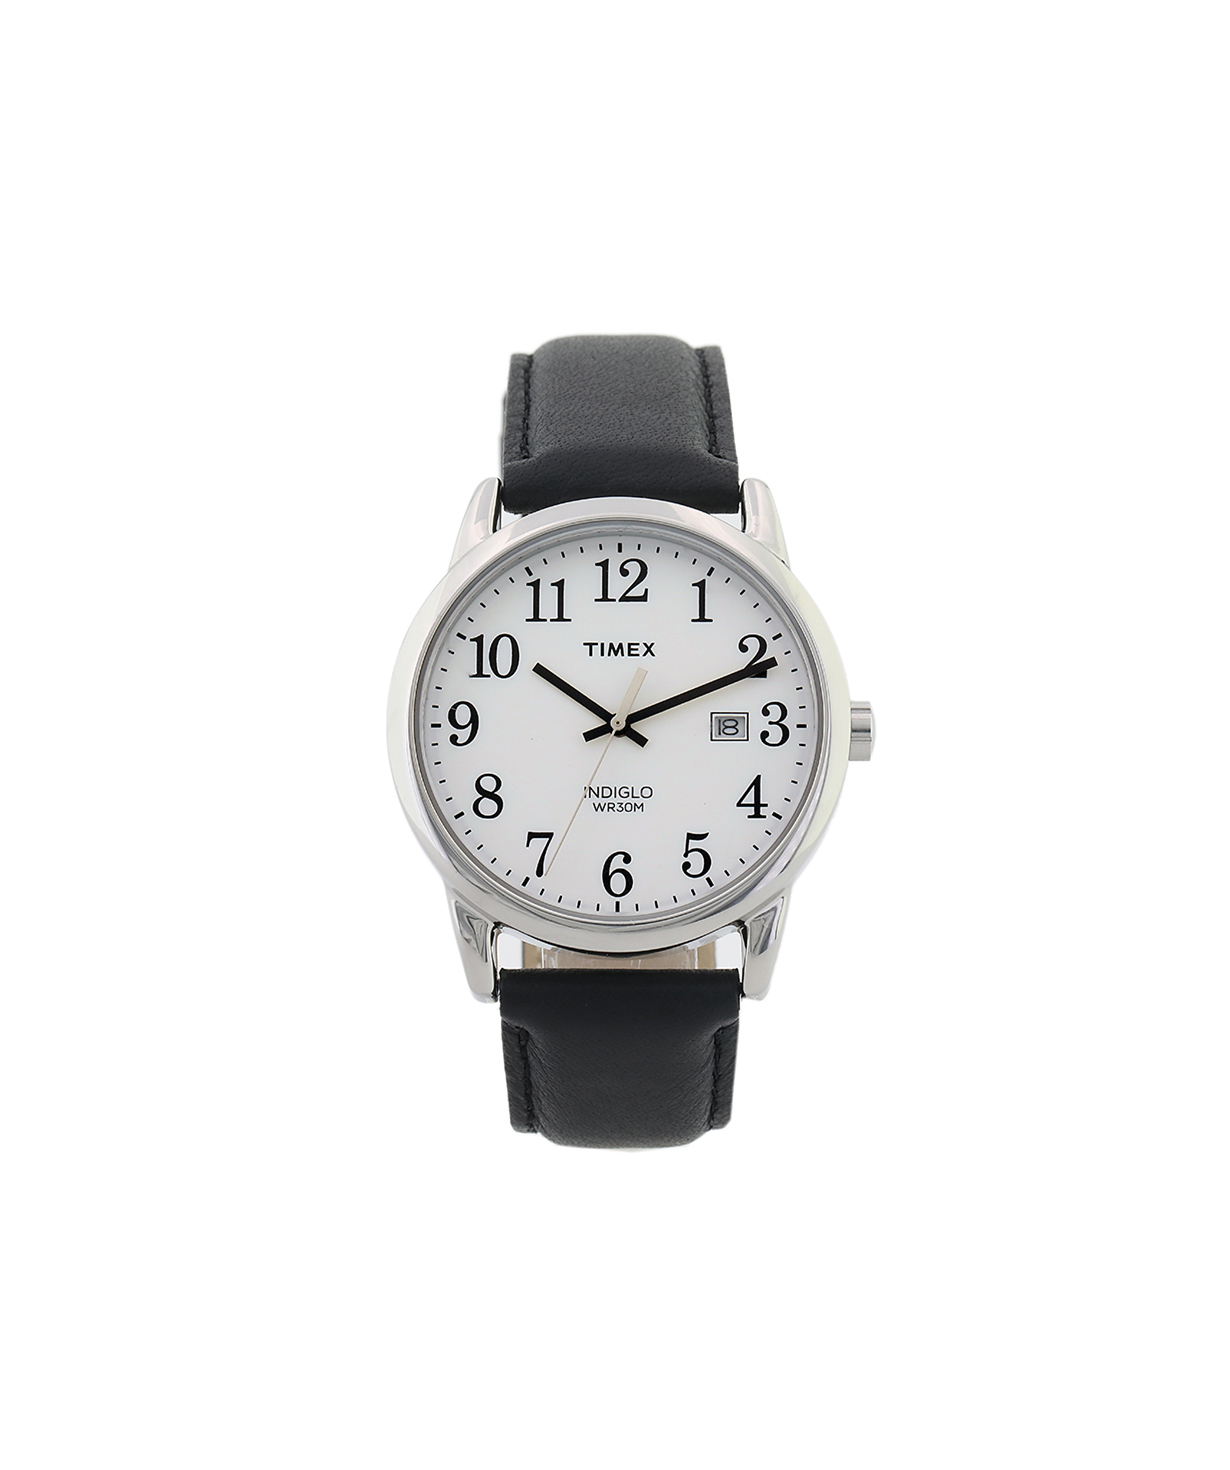 Ժամացույց «Timex» ձեռքի   TW2P75600